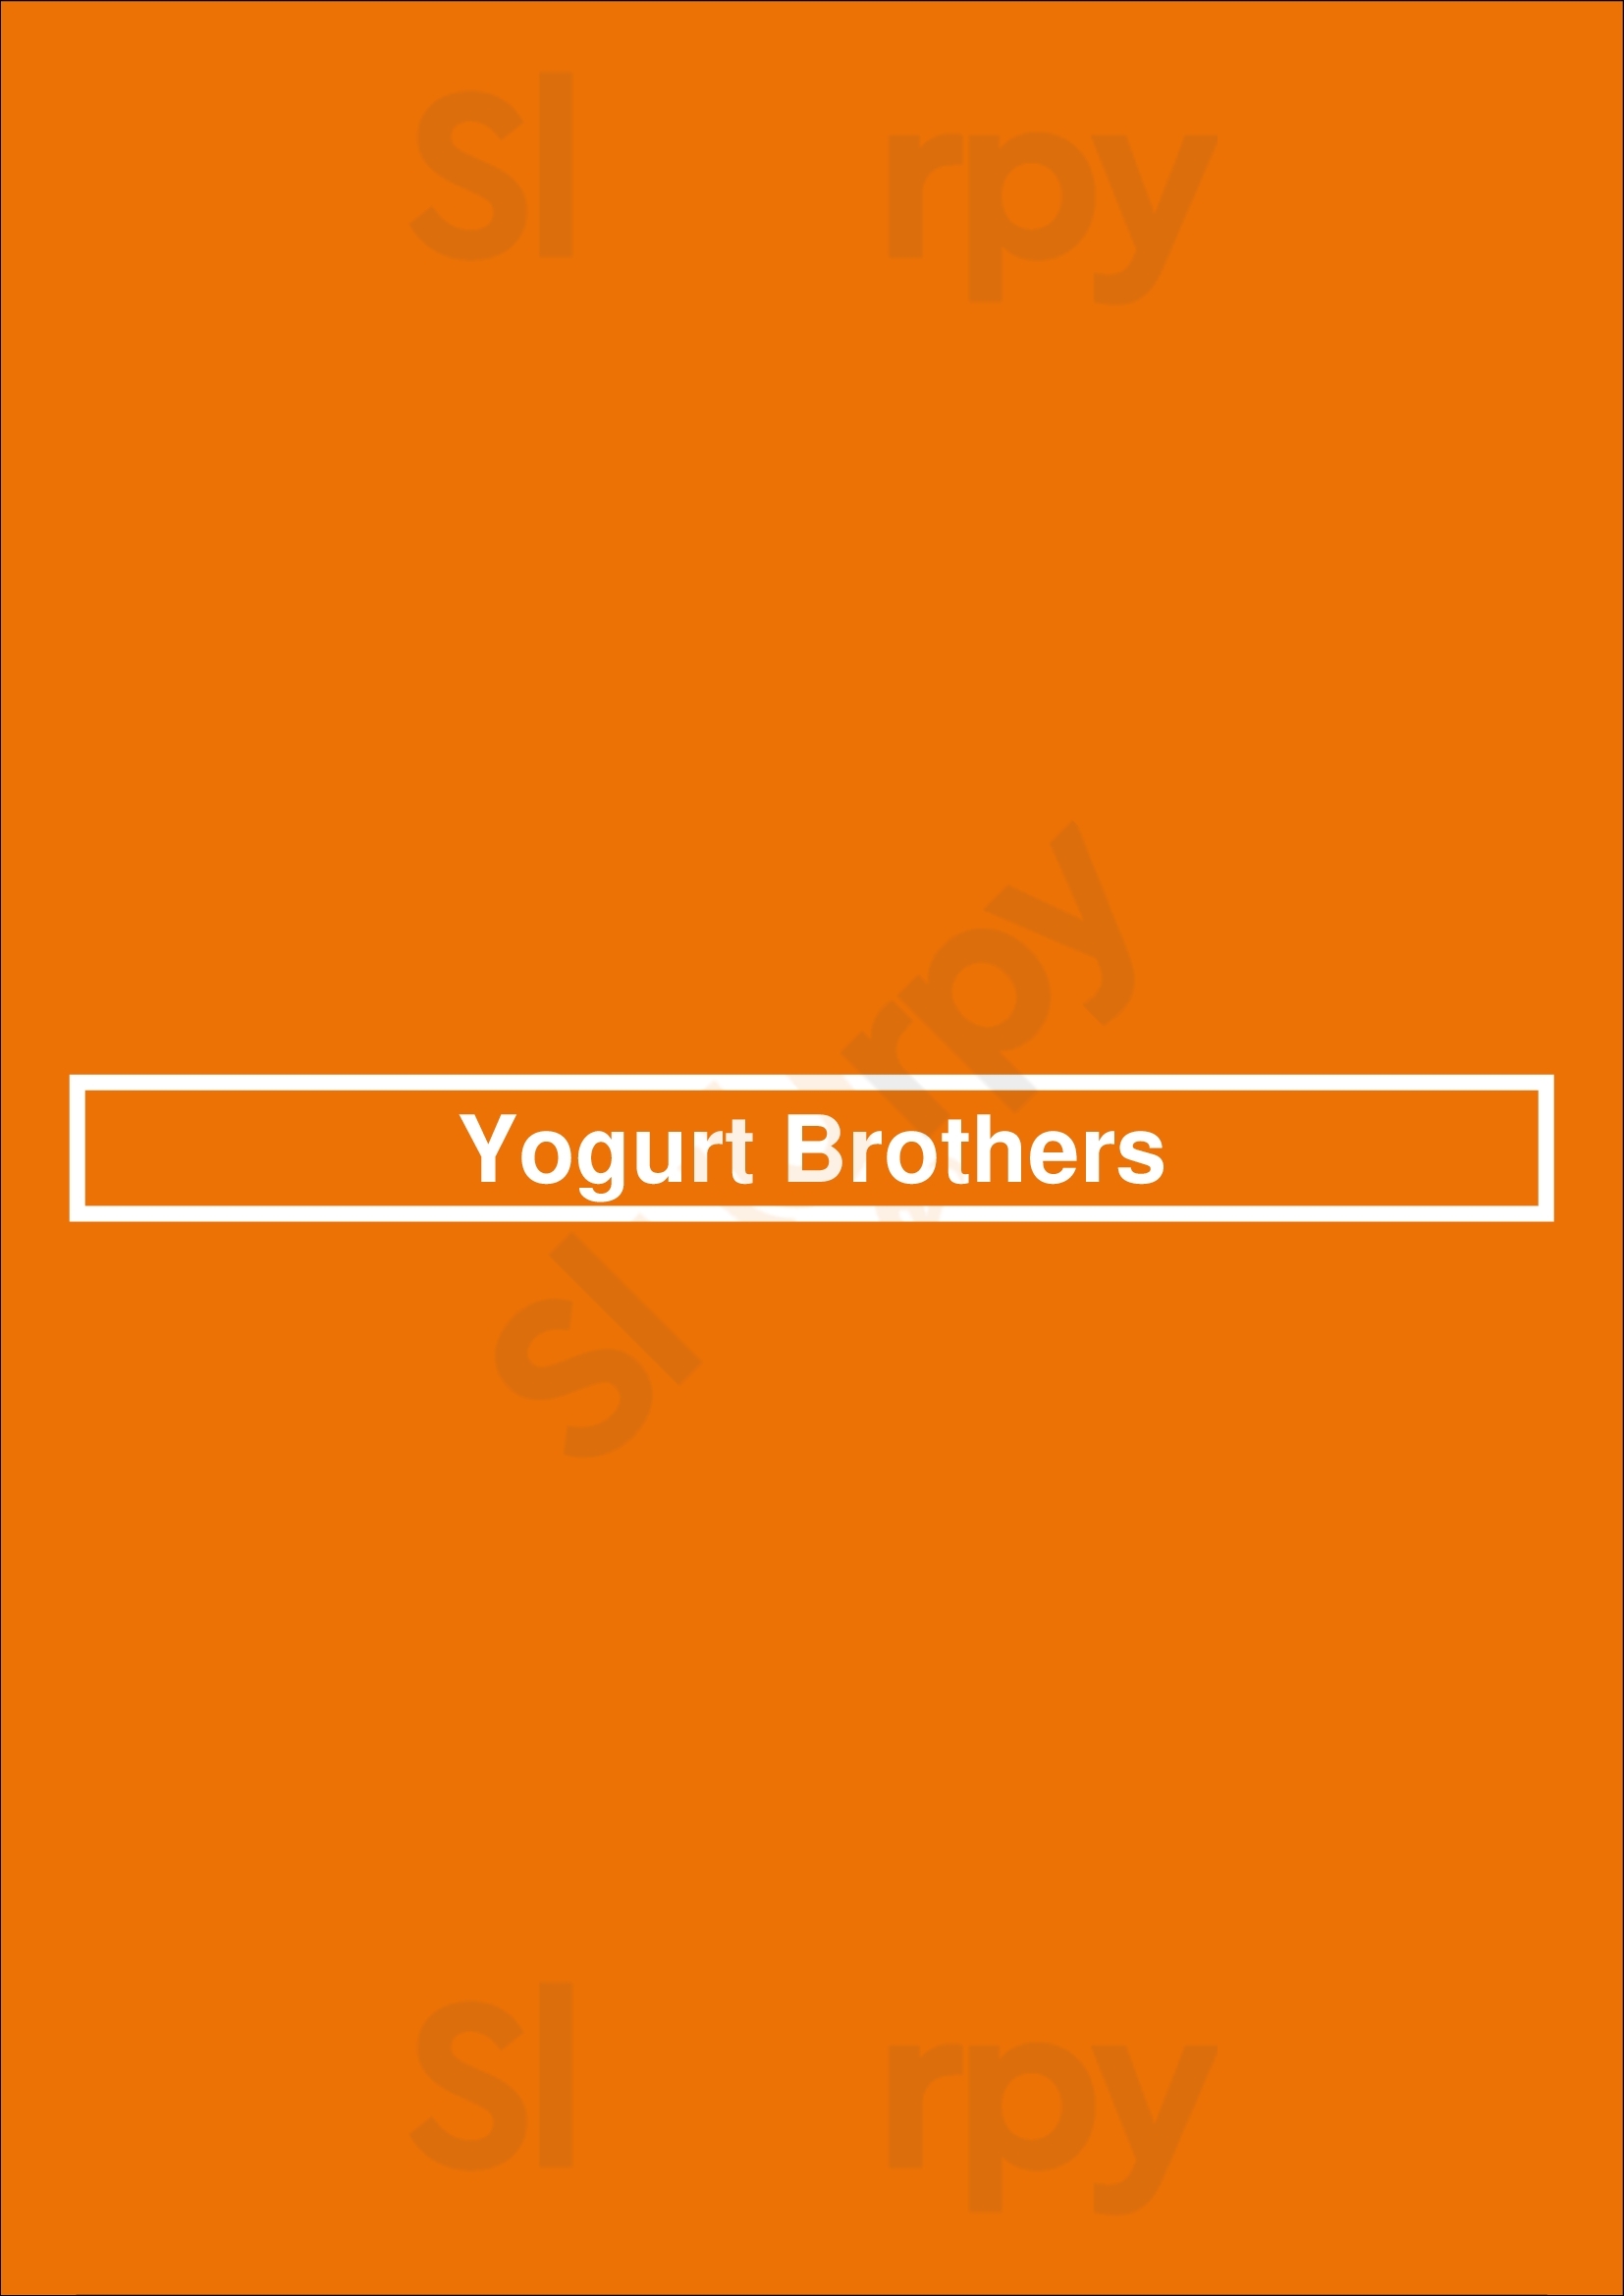 Yogurt Brothers Westminster Menu - 1